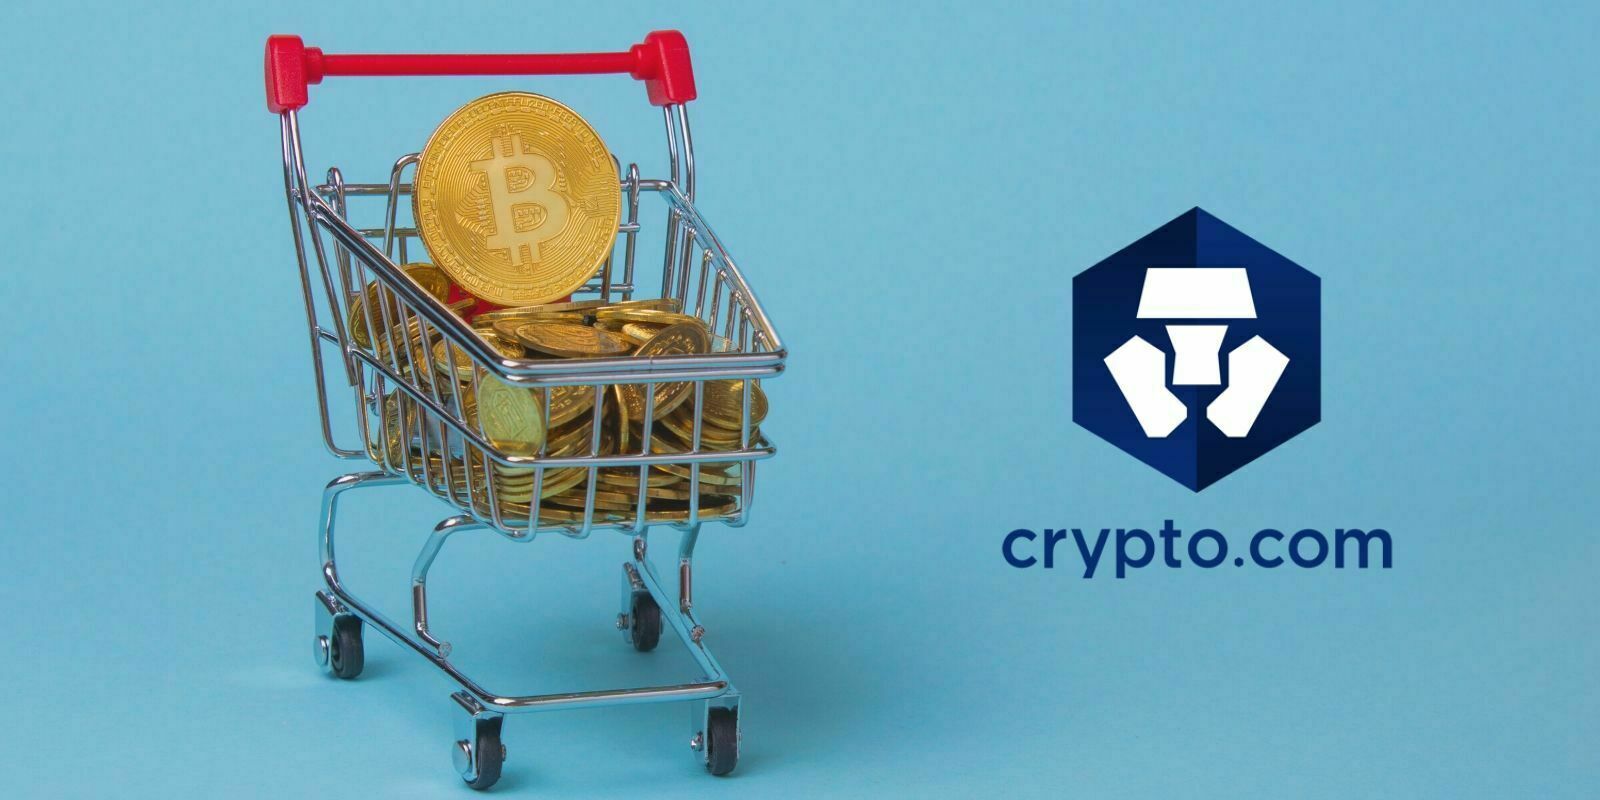 Crypto.com organise de nouveau une vente de Bitcoin (BTC) à moitié prix